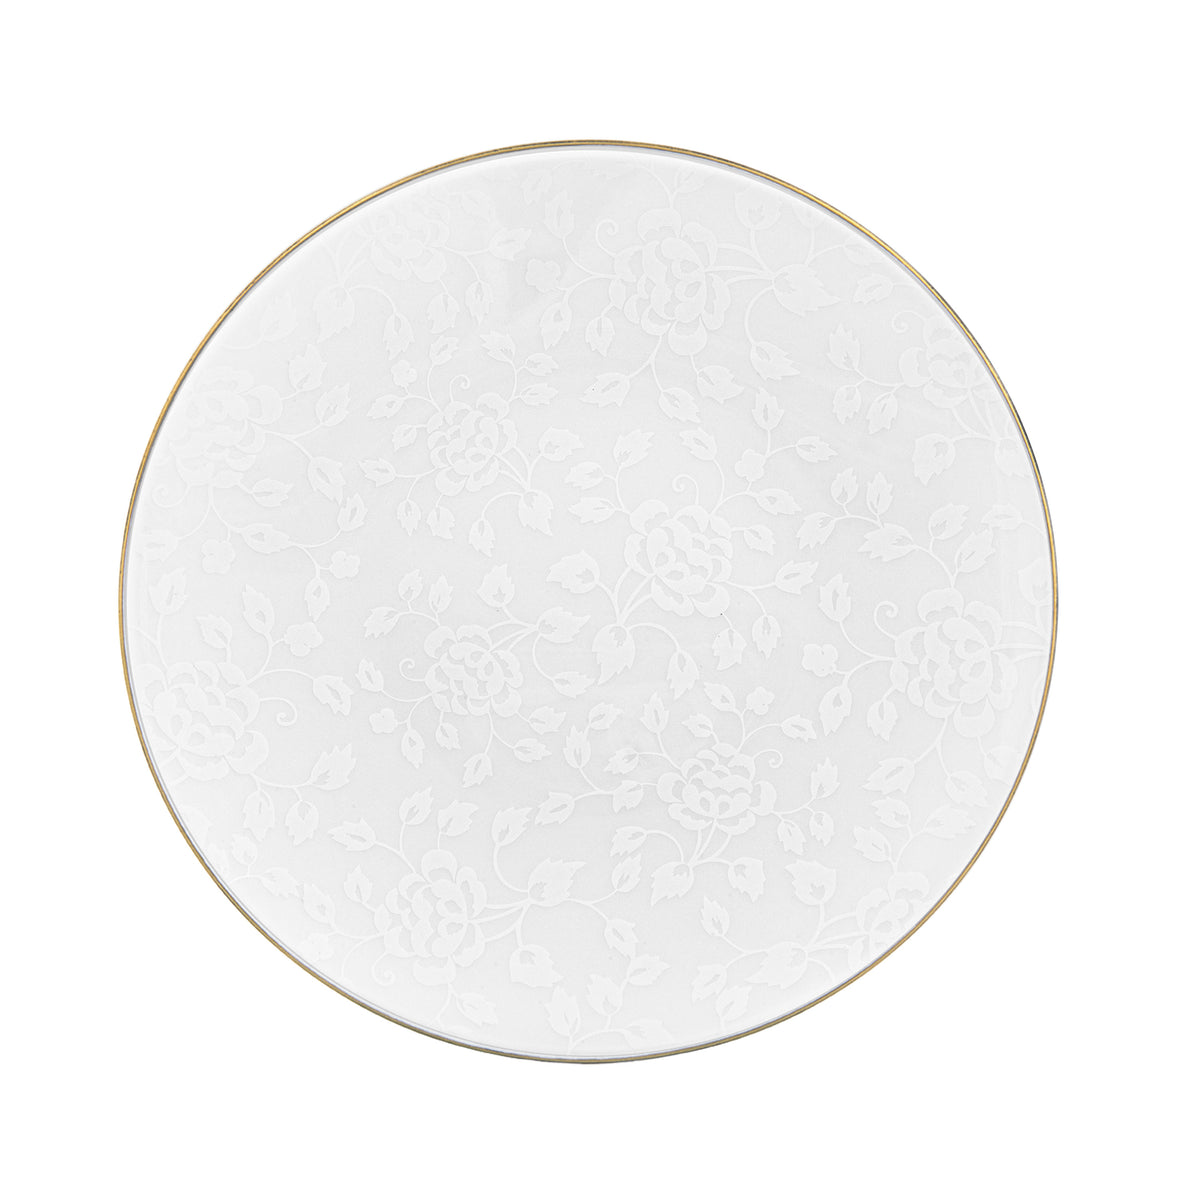 CHARDONS blanc sur blanc filet Or - Assiette 29 cm